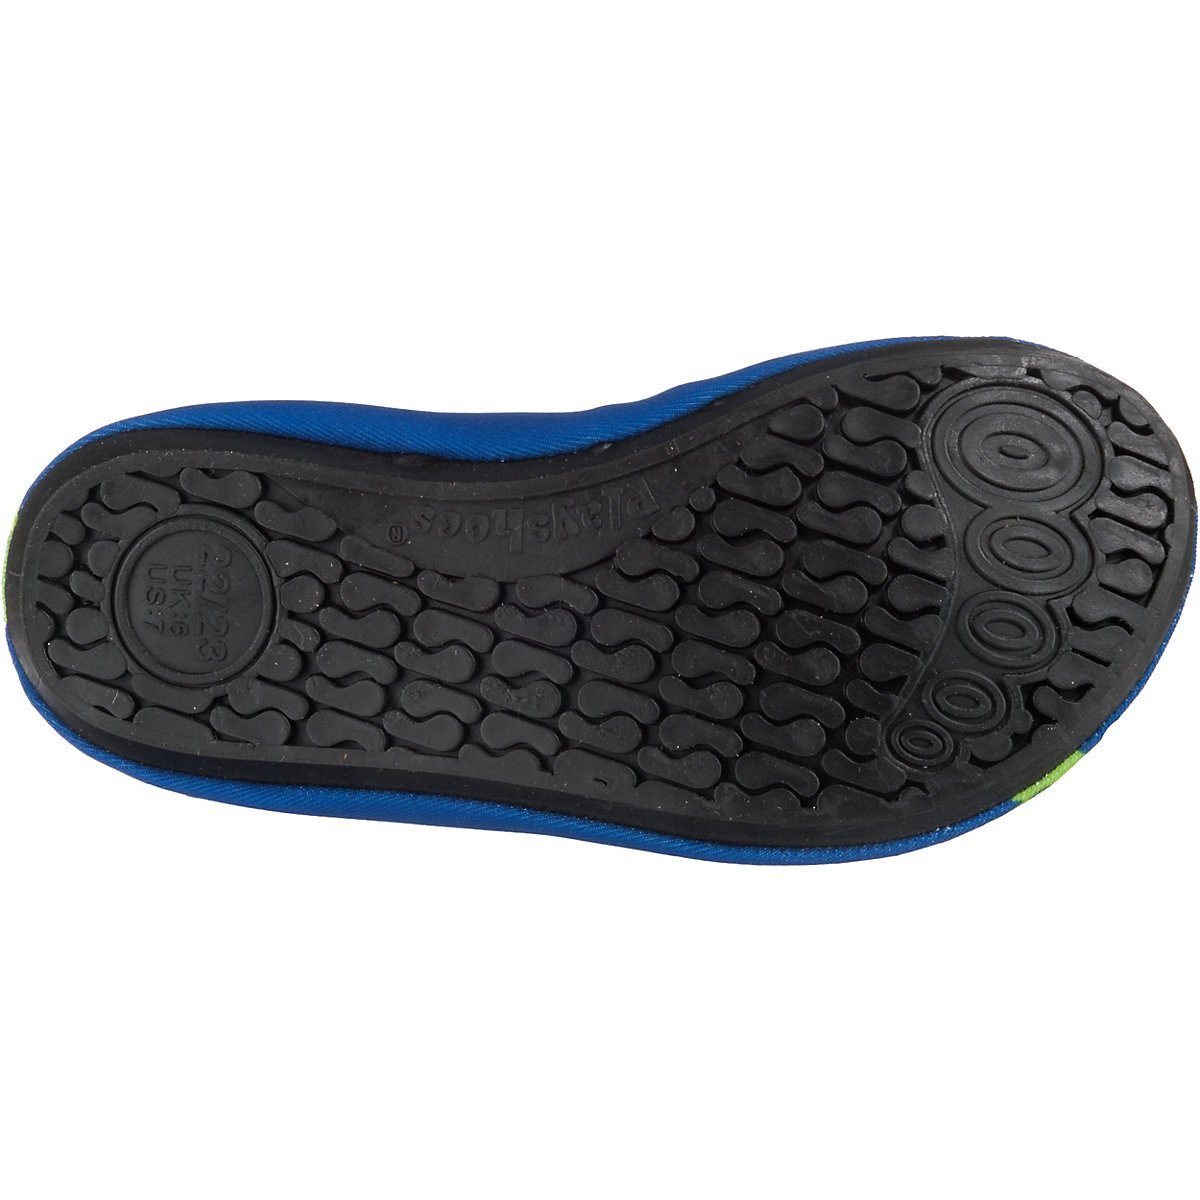 Barfuß-Schuh Krodkodil-blau Wasserschuhe mit Schwimmschuhe, Passform, rutschhemmender Badeschuhe Motiv flexible Playshoes Sohle Badeschuh